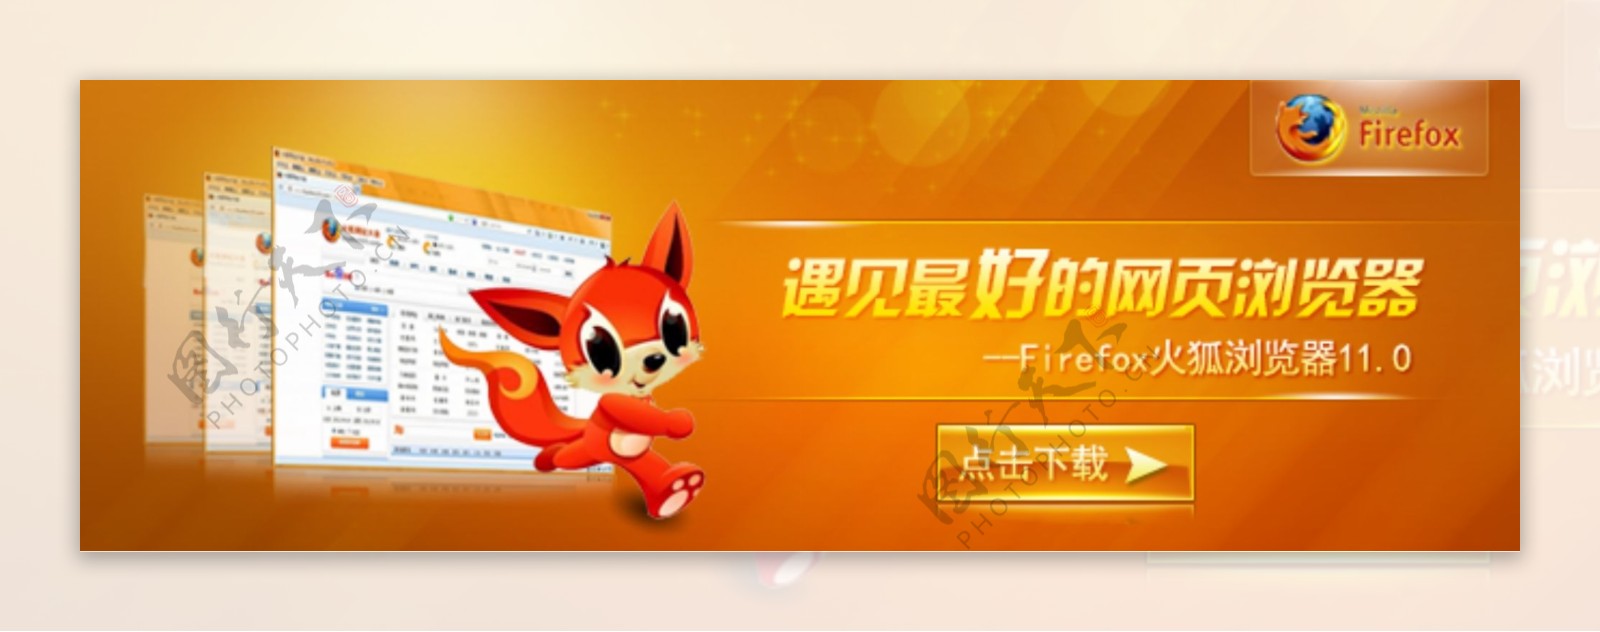 火狐浏览器banner